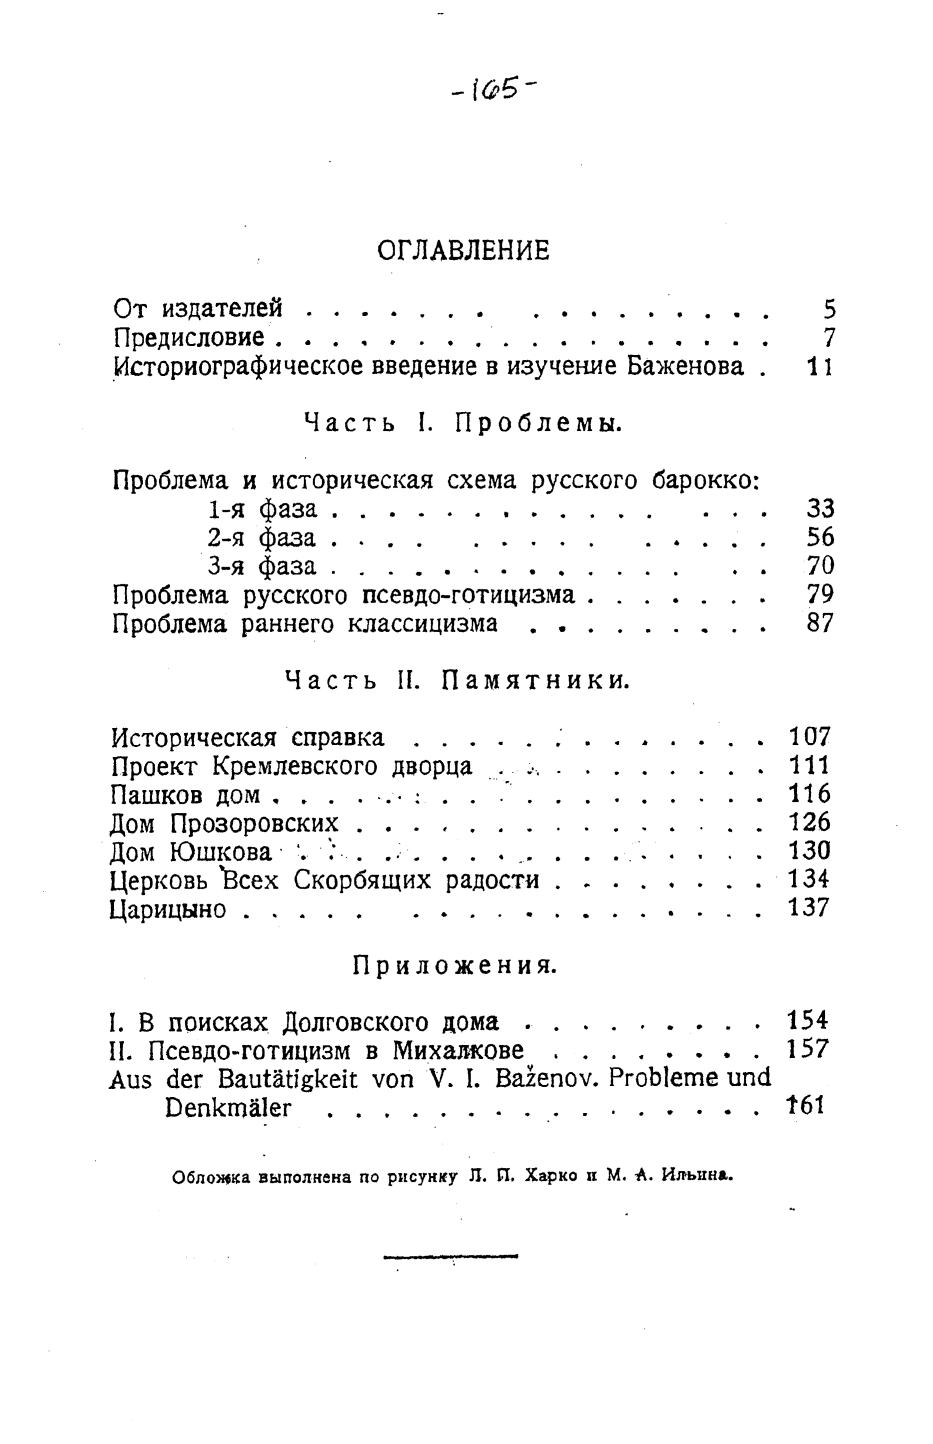 Проблемы и памятники, связанные с В. И. Баженовым / В. В. Згура. — Москва, 1928